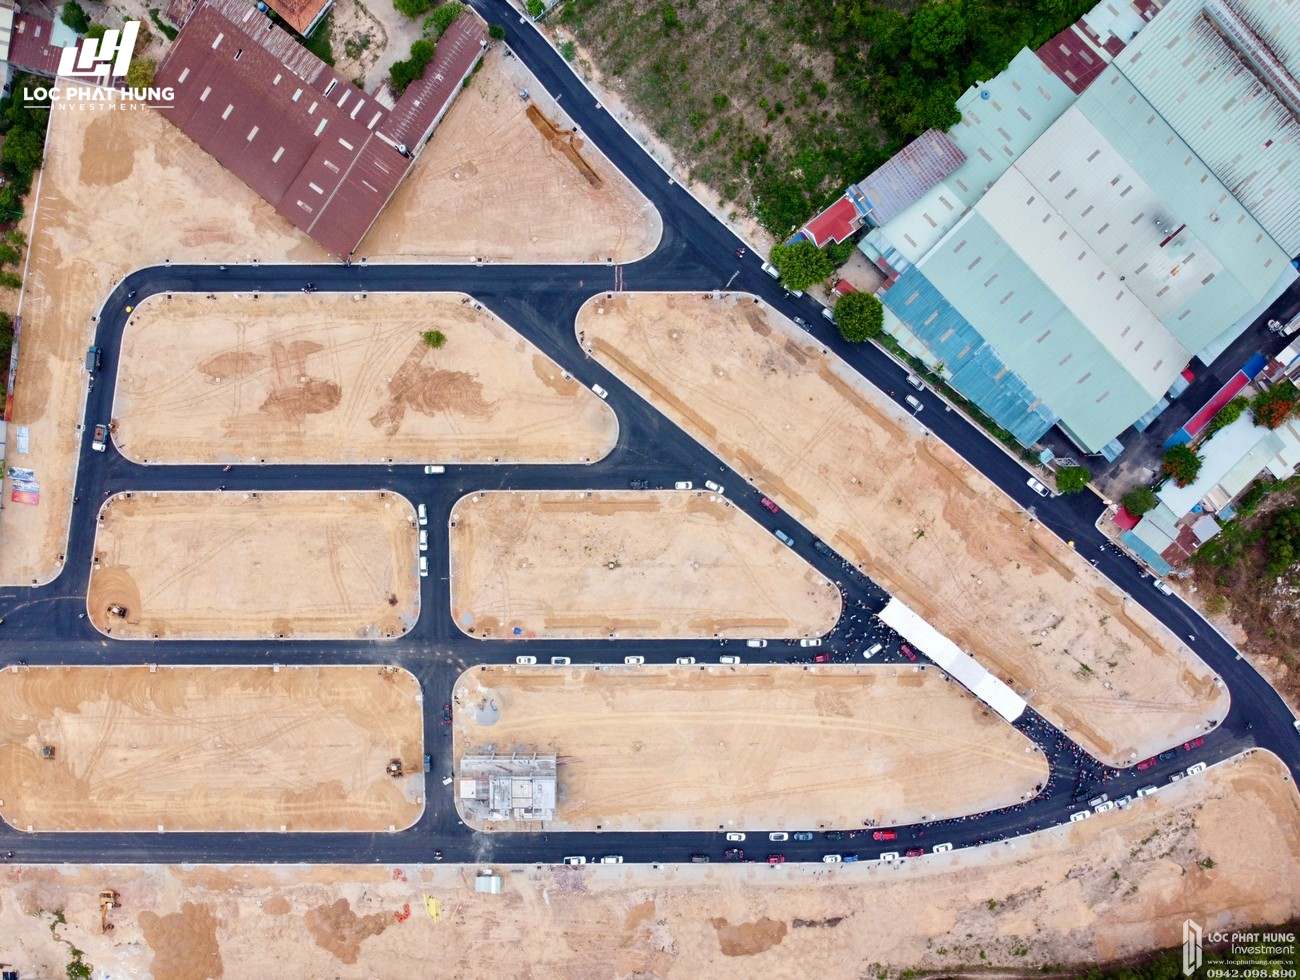 Tiến độ dự án đất nền nhà phố Bình Dương Avenue City 09/05/2020 Bến Cát Đường Quốc lộ 13 chủ đầu tư Phú Cường